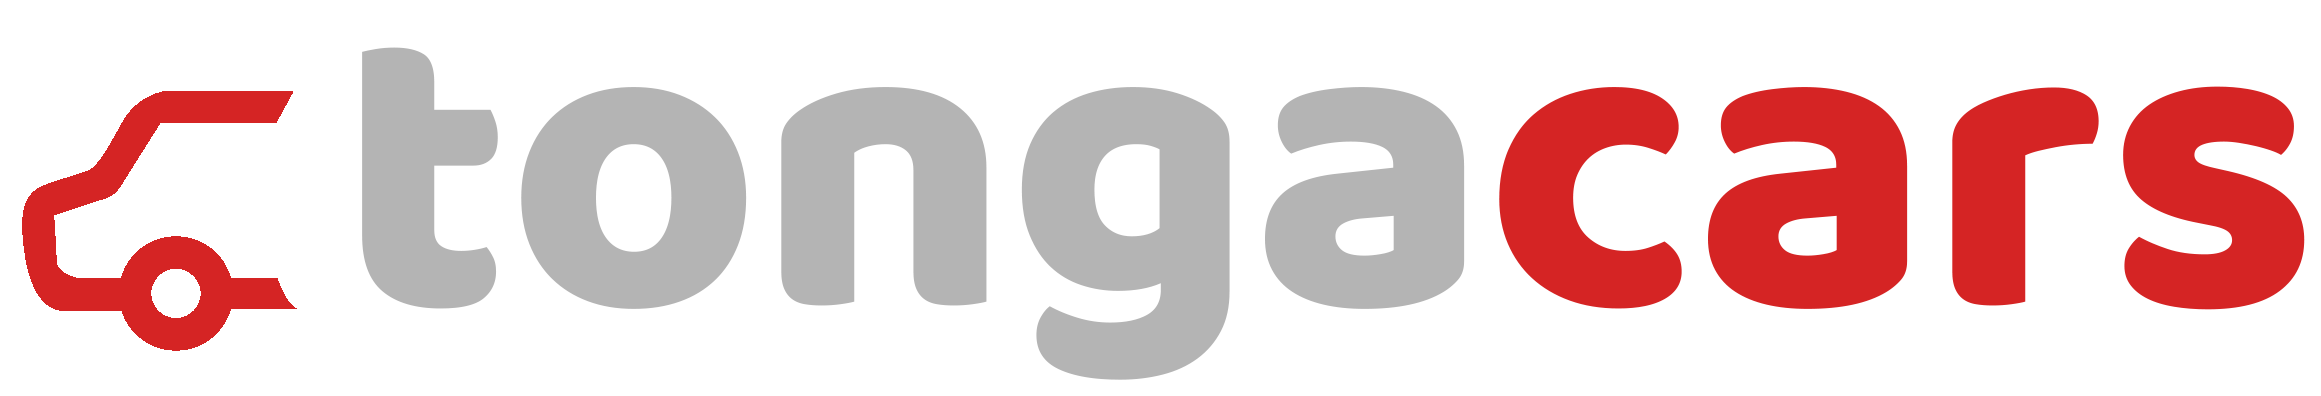 Tongacars logo